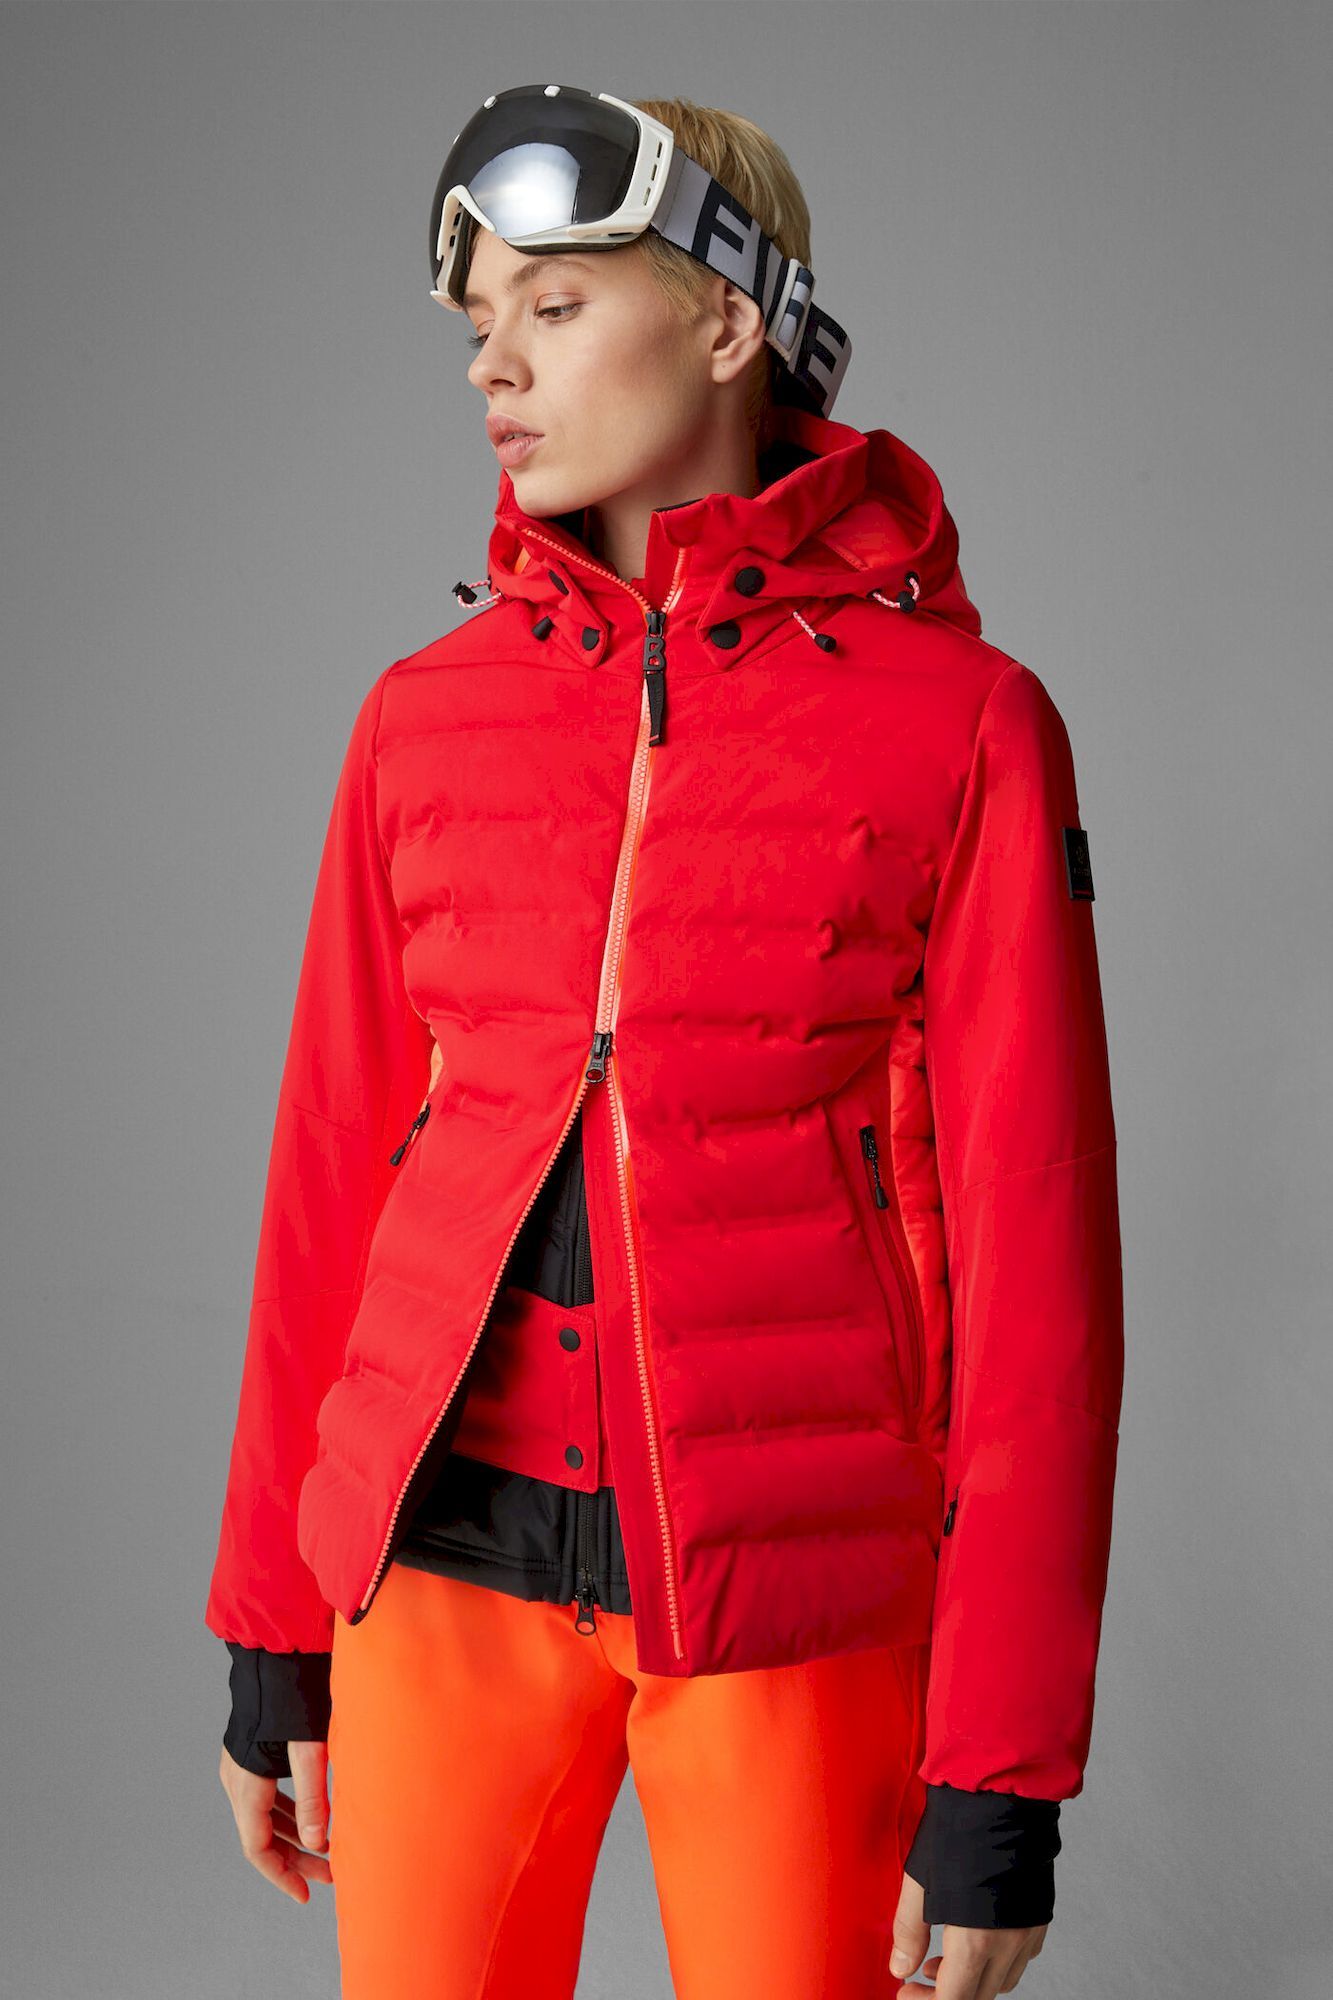 Bogner Fire + - Ski jacket - Women's